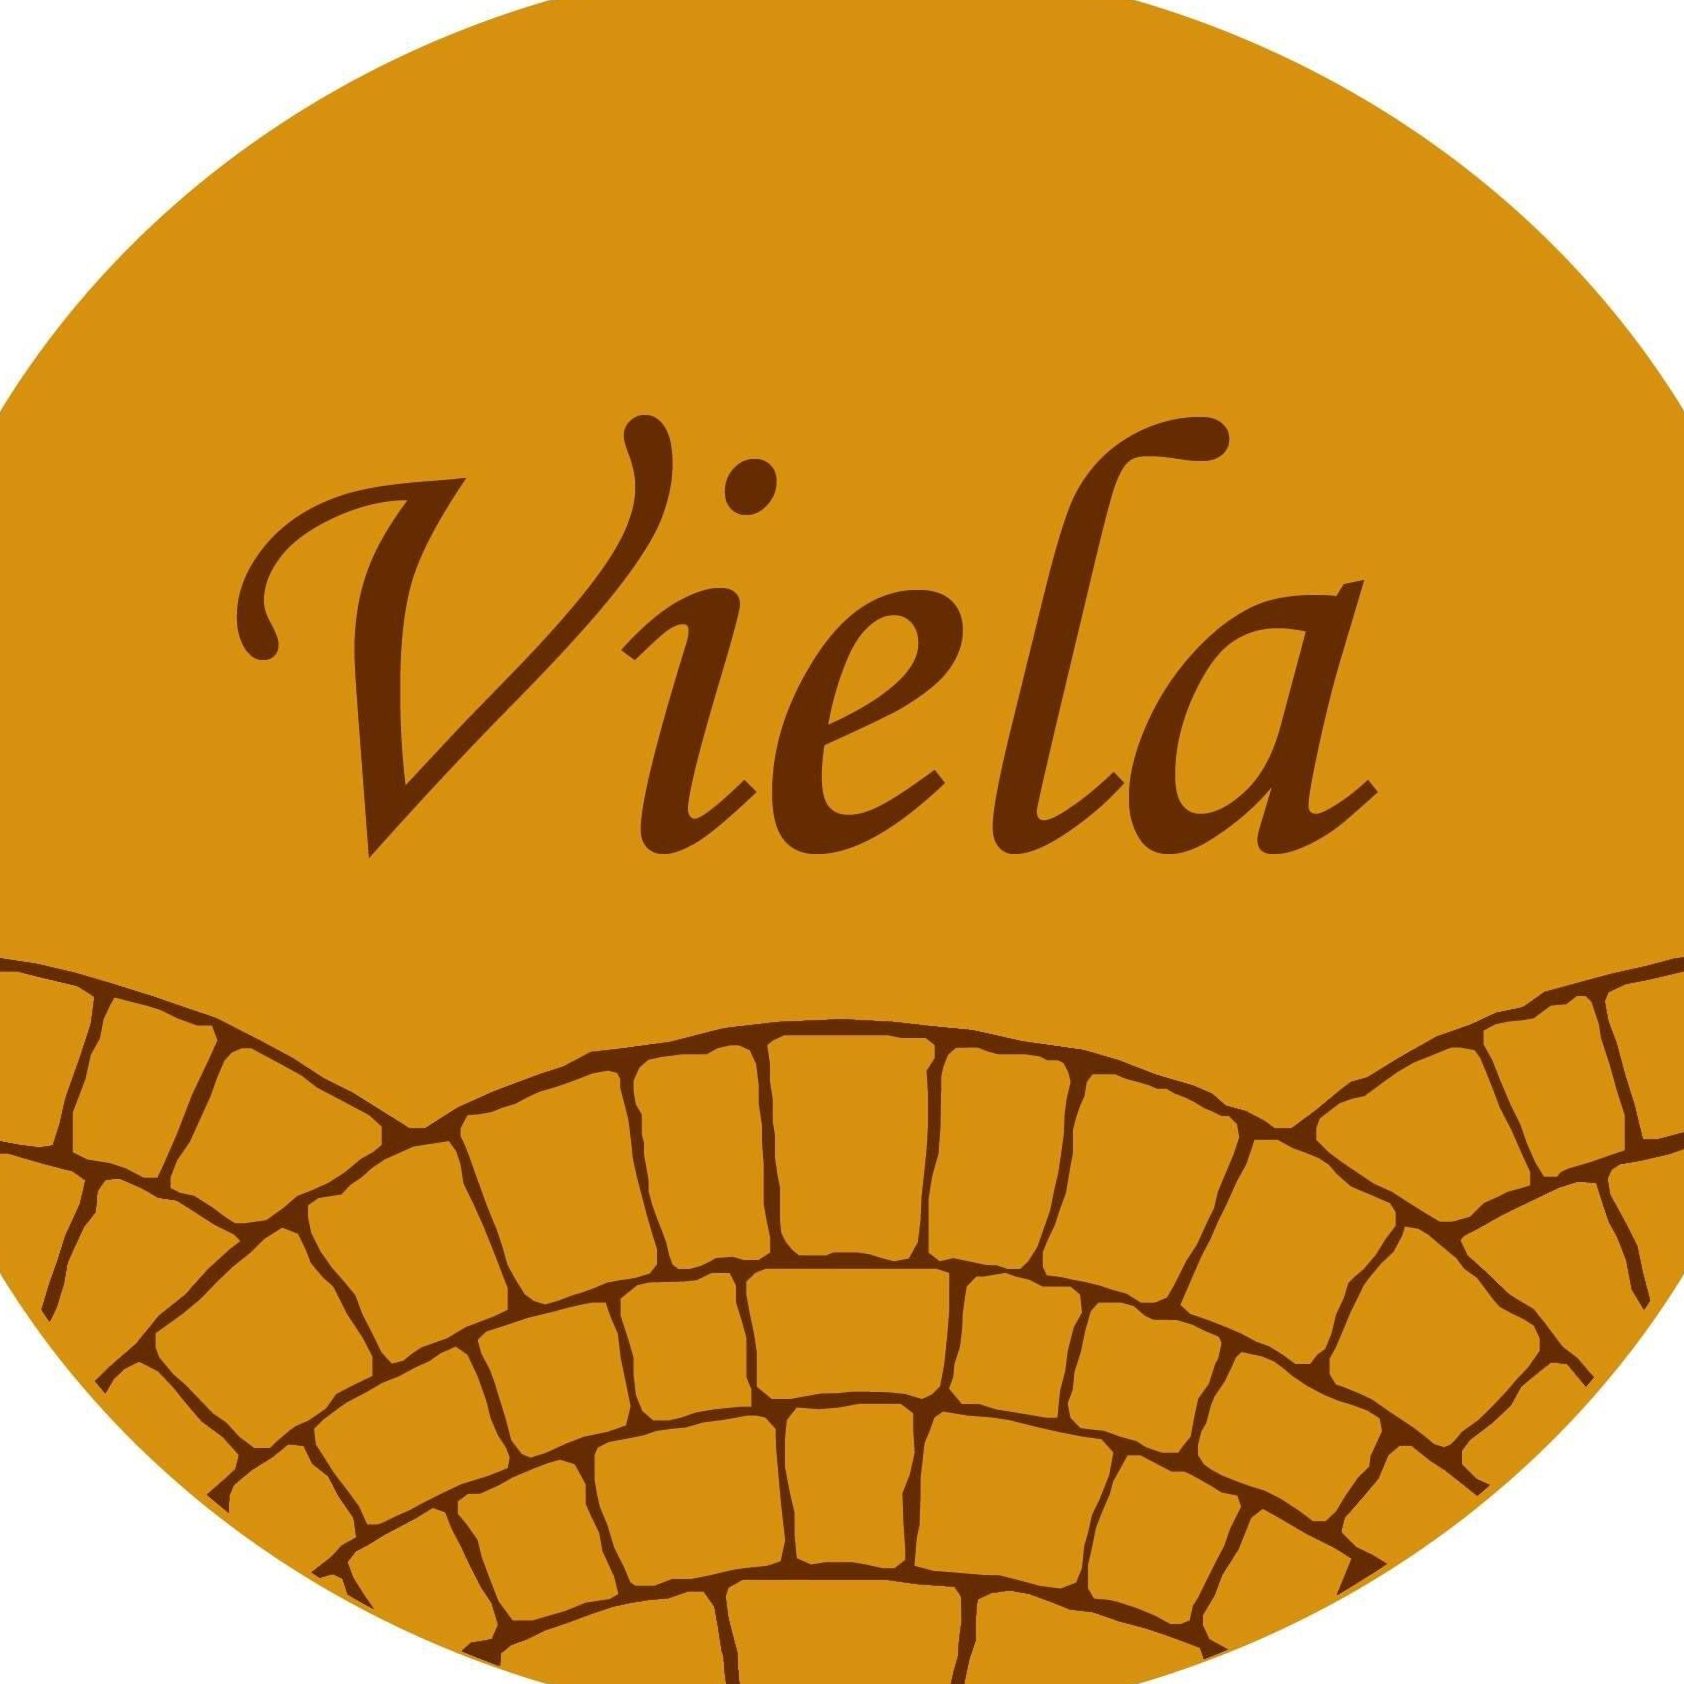 Viela Café